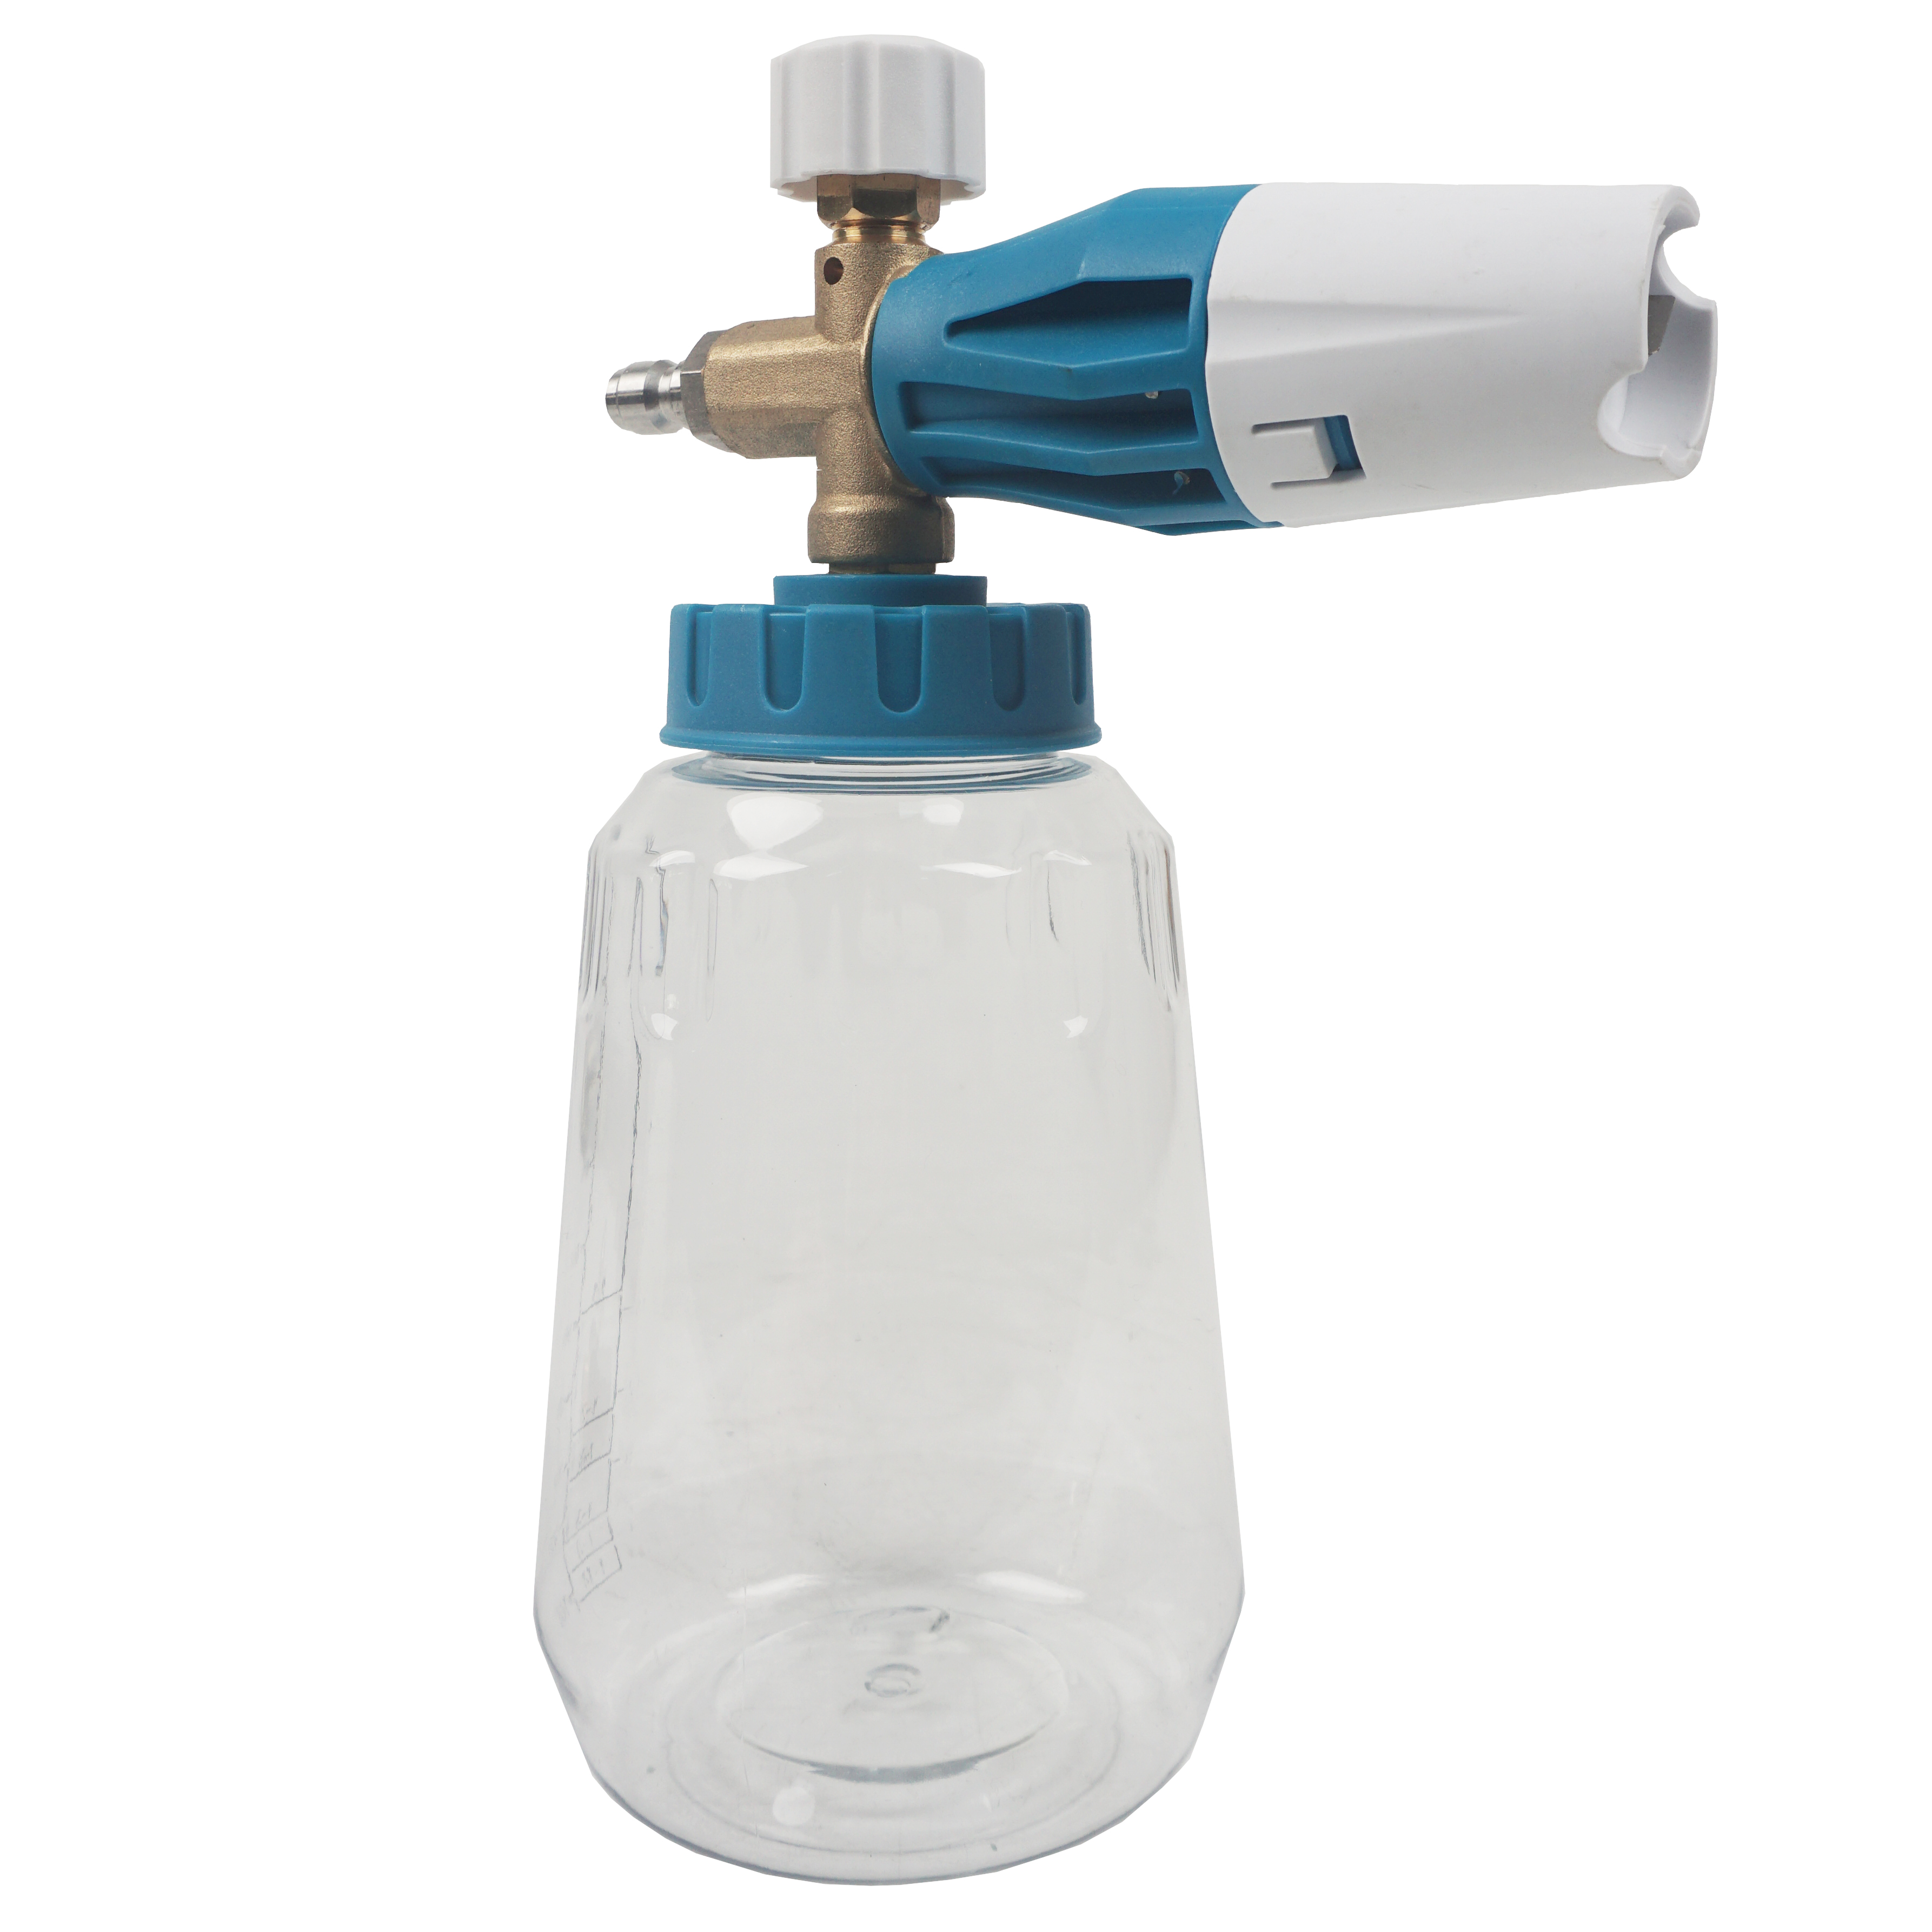 Autowaschschaumflasche Hochdruck Schneeschaum Lanze Seife mit Stecker Automatikstools